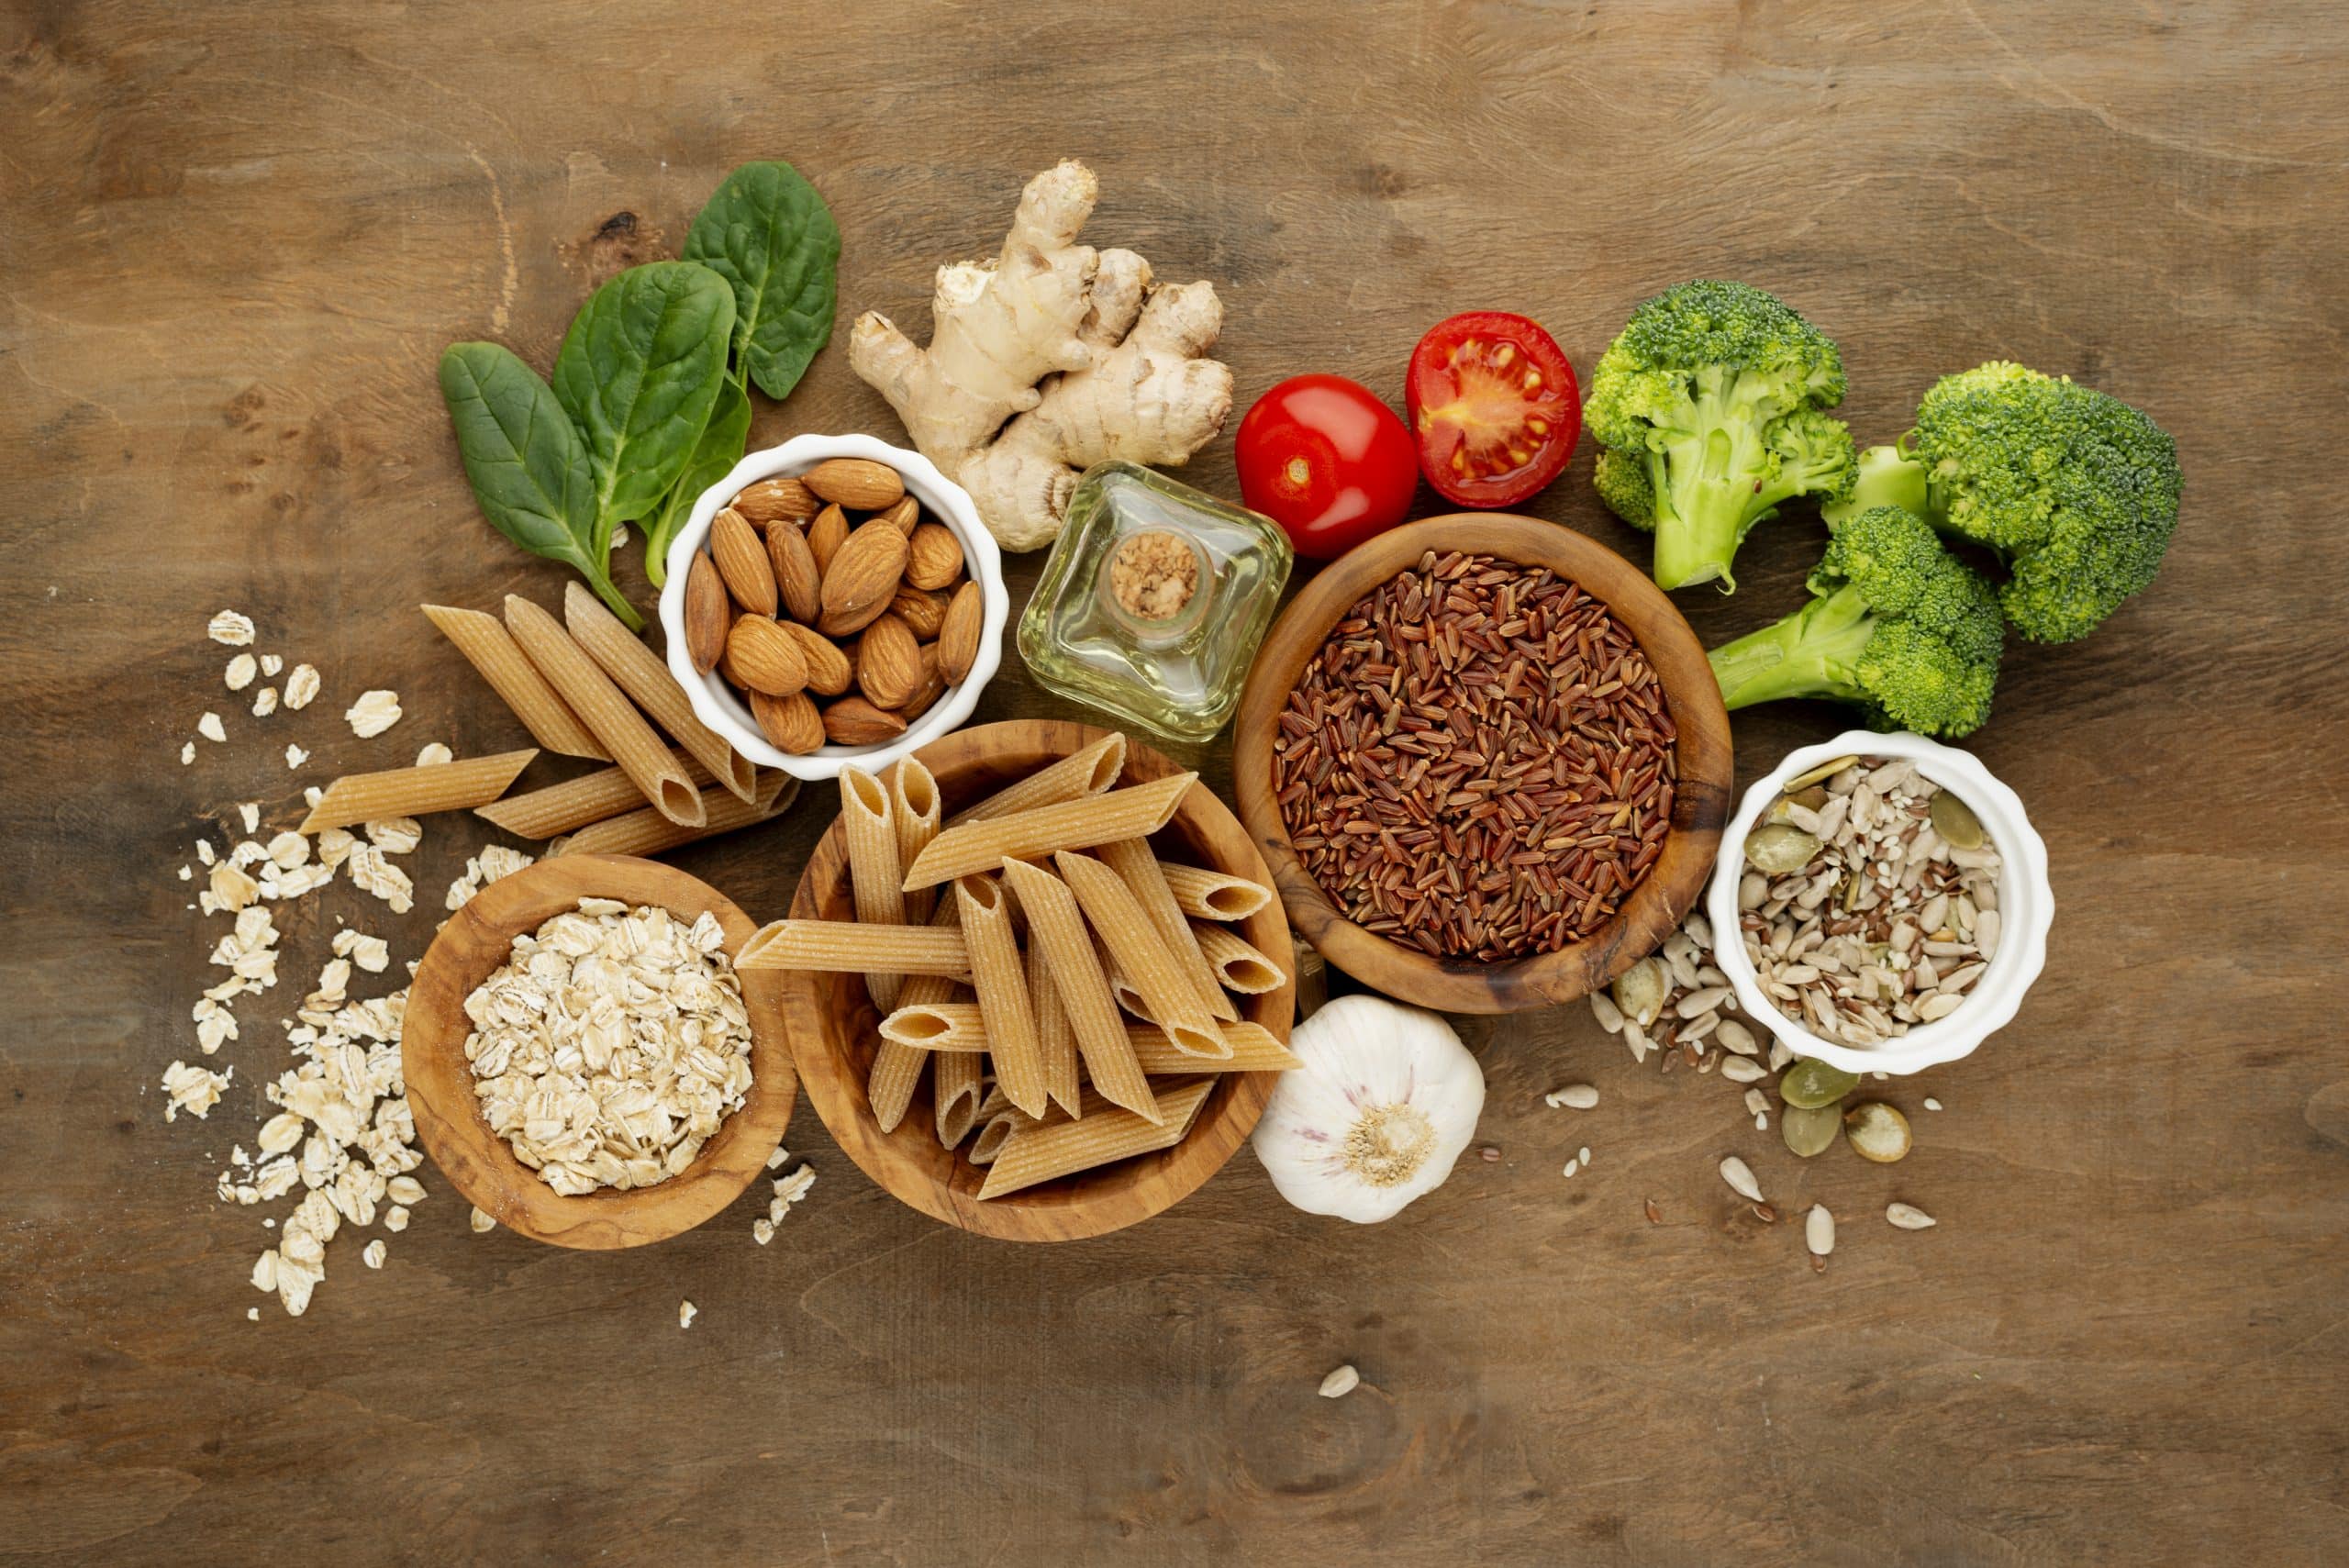 Vista aérea de una serie de alimentos encima de una mesa. Se ve pasta integral, legumbres, brócoli, arroz, tomates, almendras y albahaca. Imagen para el artículo sobre alérgenos en alimentación.